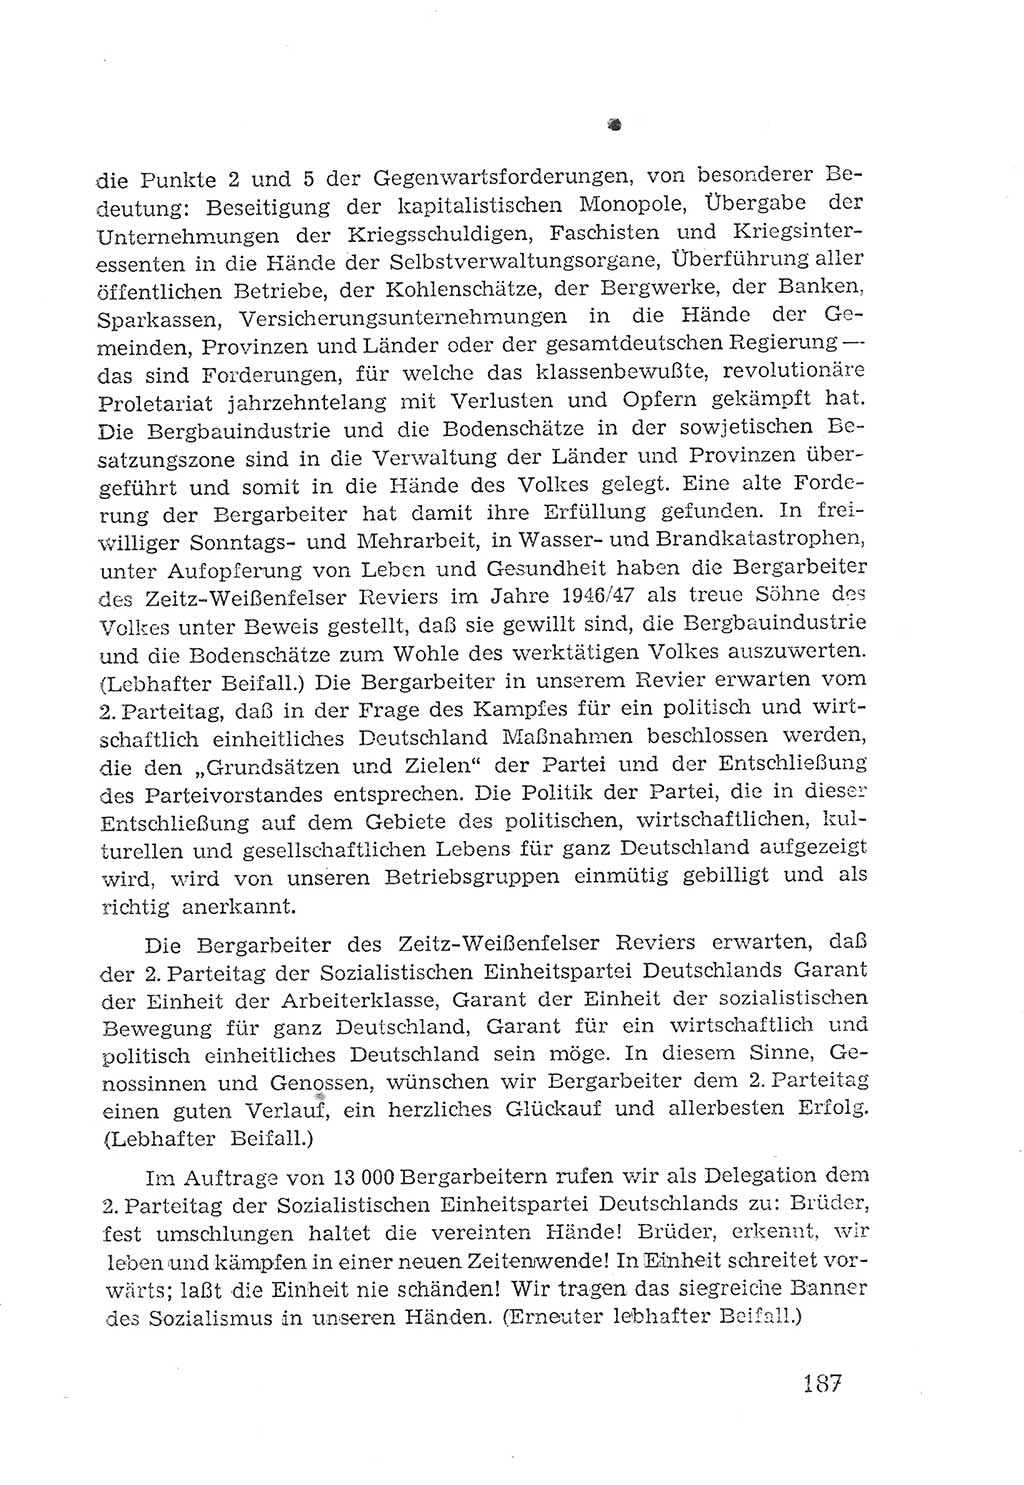 Protokoll der Verhandlungen des 2. Parteitages der Sozialistischen Einheitspartei Deutschlands (SED) [Sowjetische Besatzungszone (SBZ) Deutschlands] 1947, Seite 187 (Prot. Verh. 2. PT SED SBZ Dtl. 1947, S. 187)